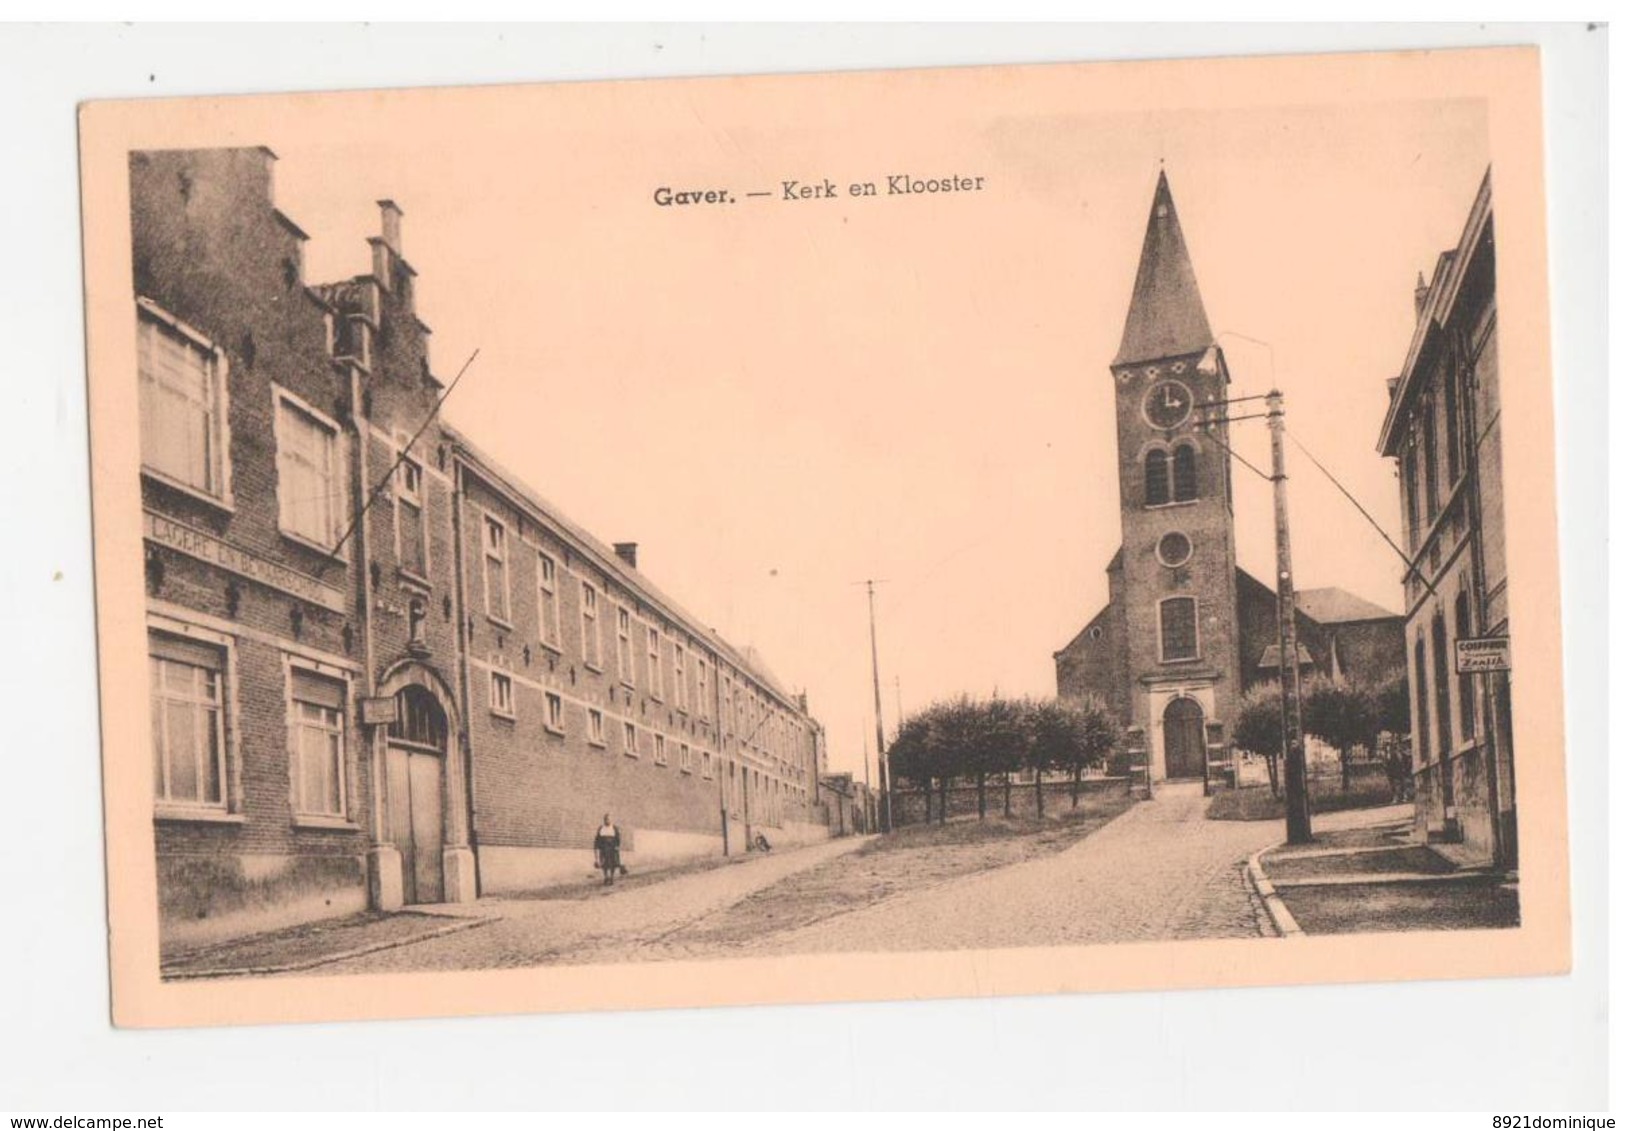 GAVER (Gavere) Kerk En Klooster - Gavere